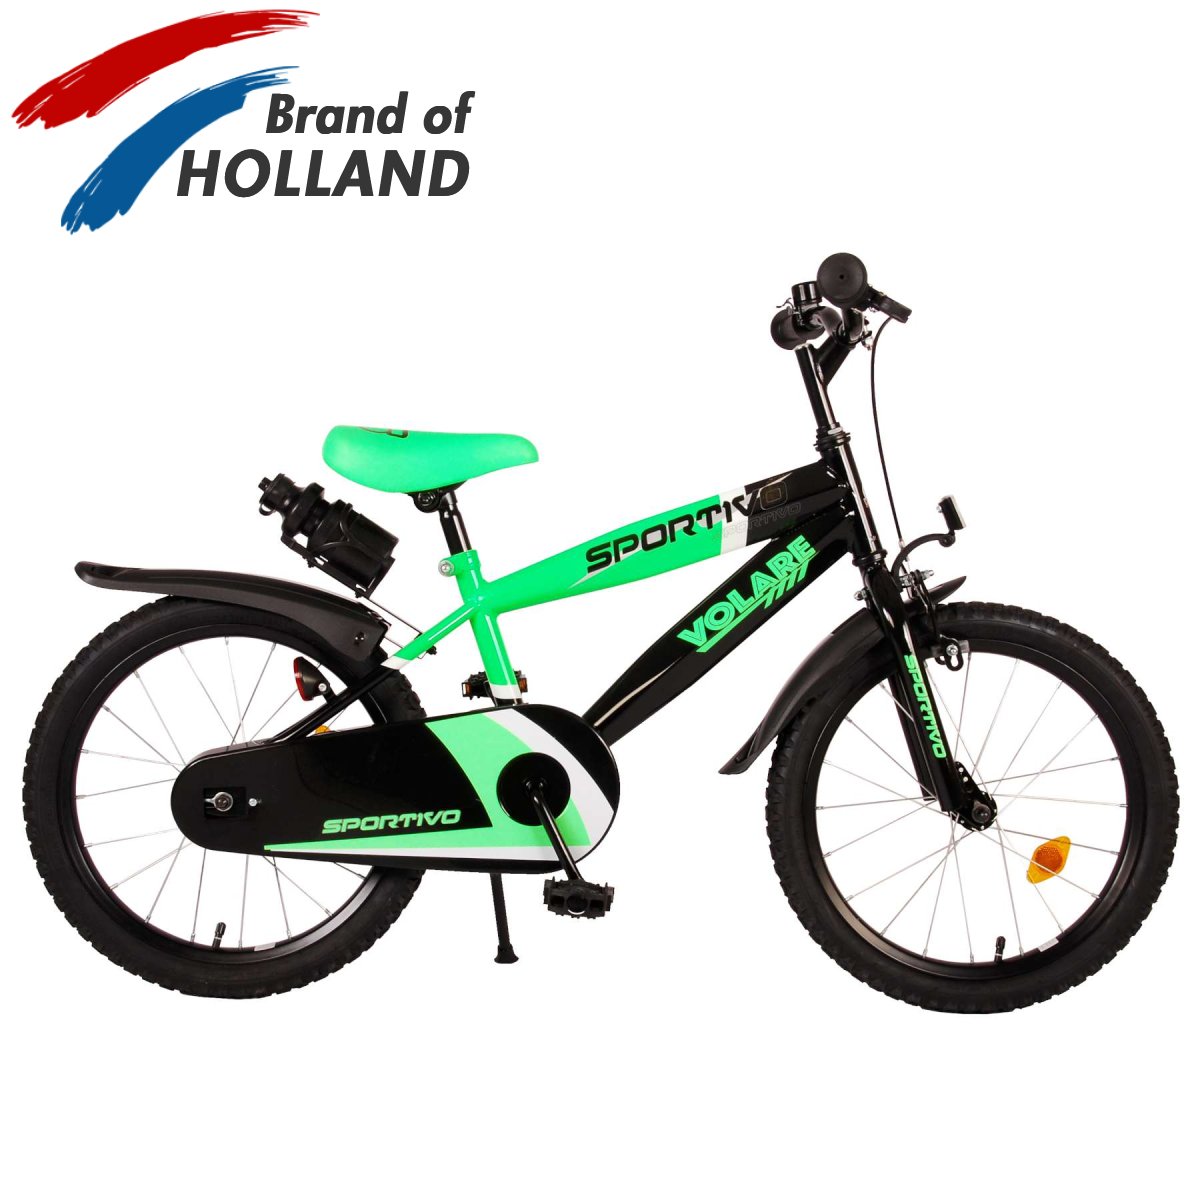 Vaikiškas dviratis VOLARE Sportivo, 18 dydis, žalios sp. - 1